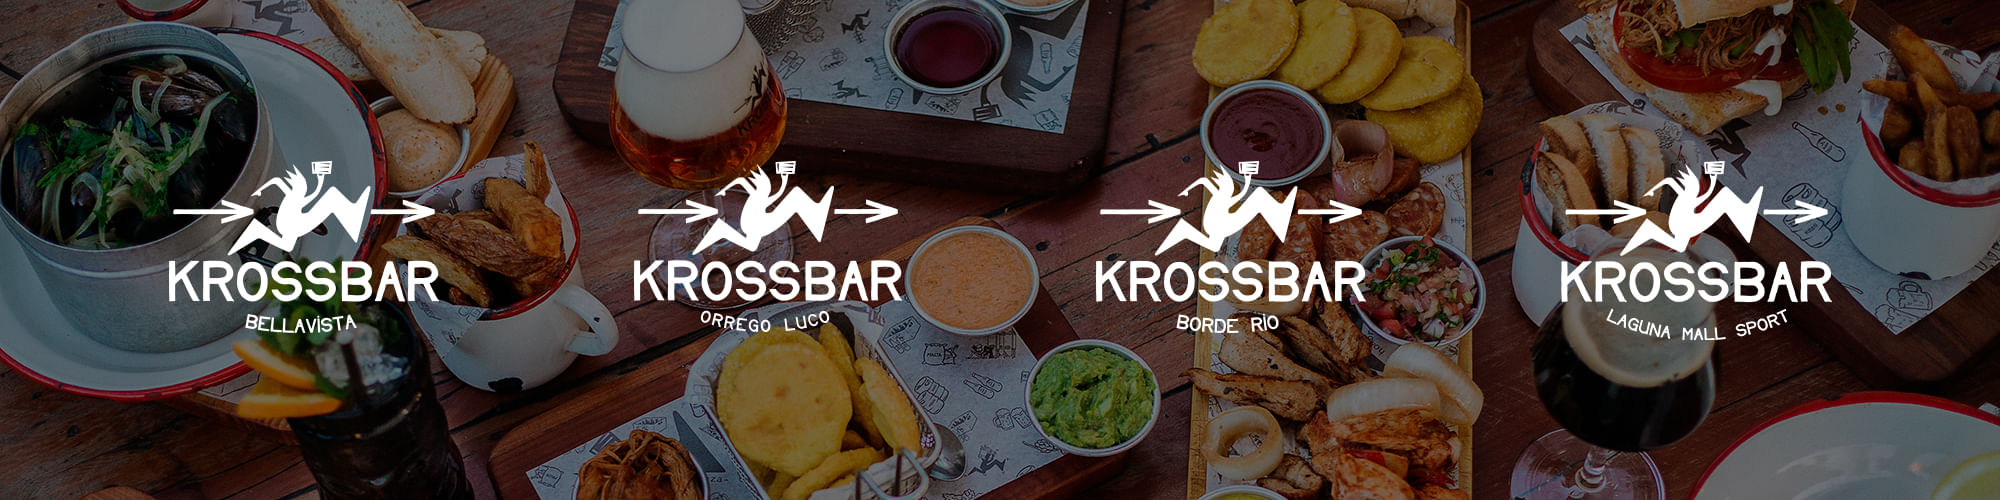 Krossbar - Cervecerias Kross